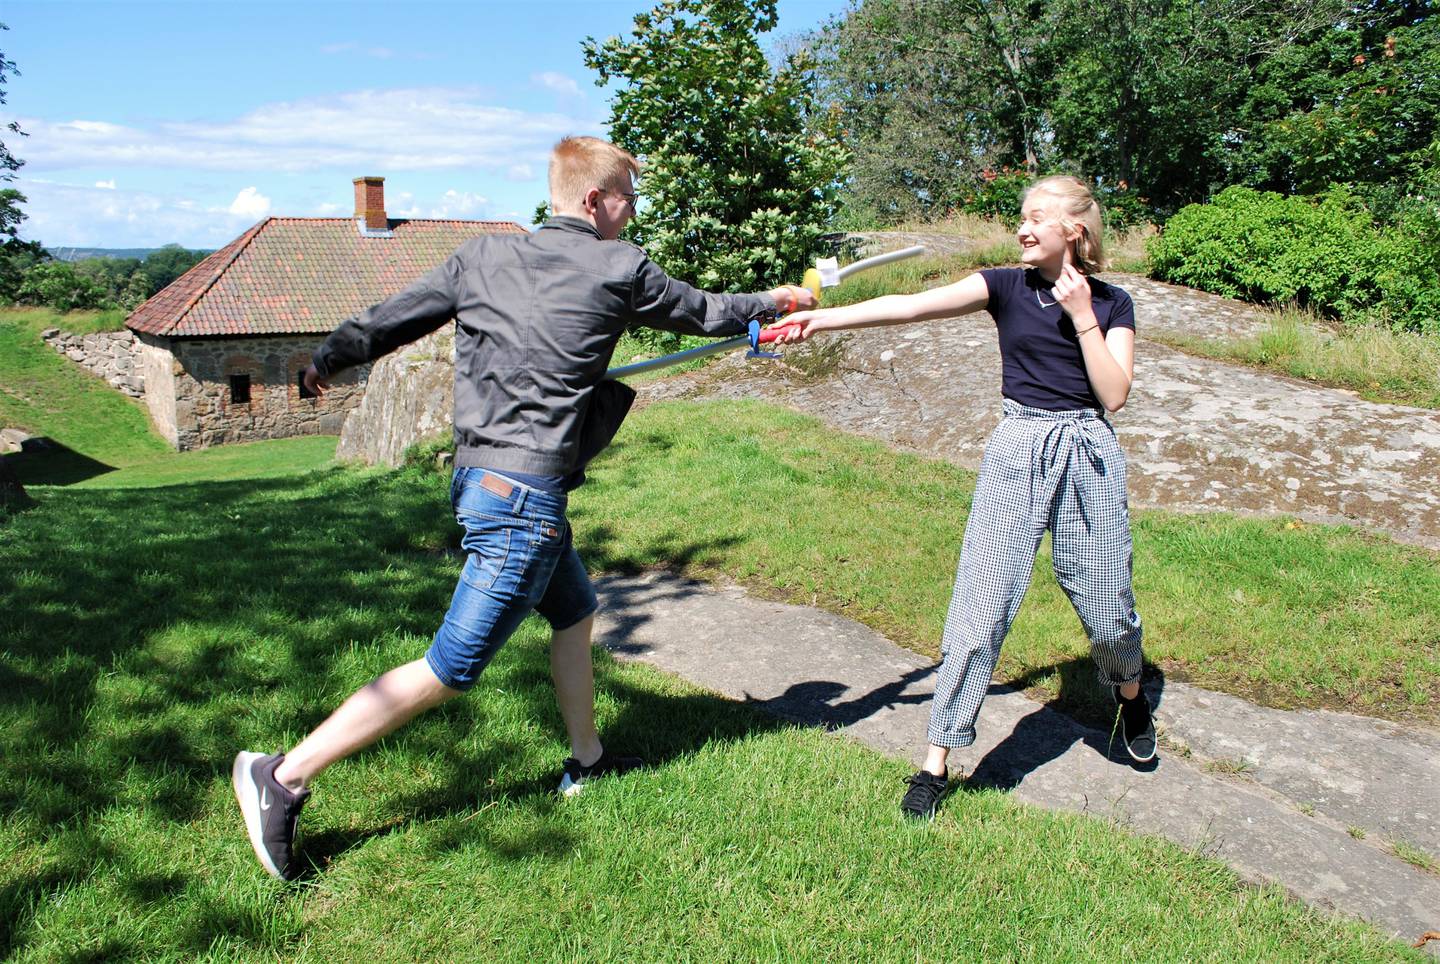 Aktivitetslederne Sturla Storemyr (18) og Aurora Pettersen (16) i en vennskapelig fekteduell.